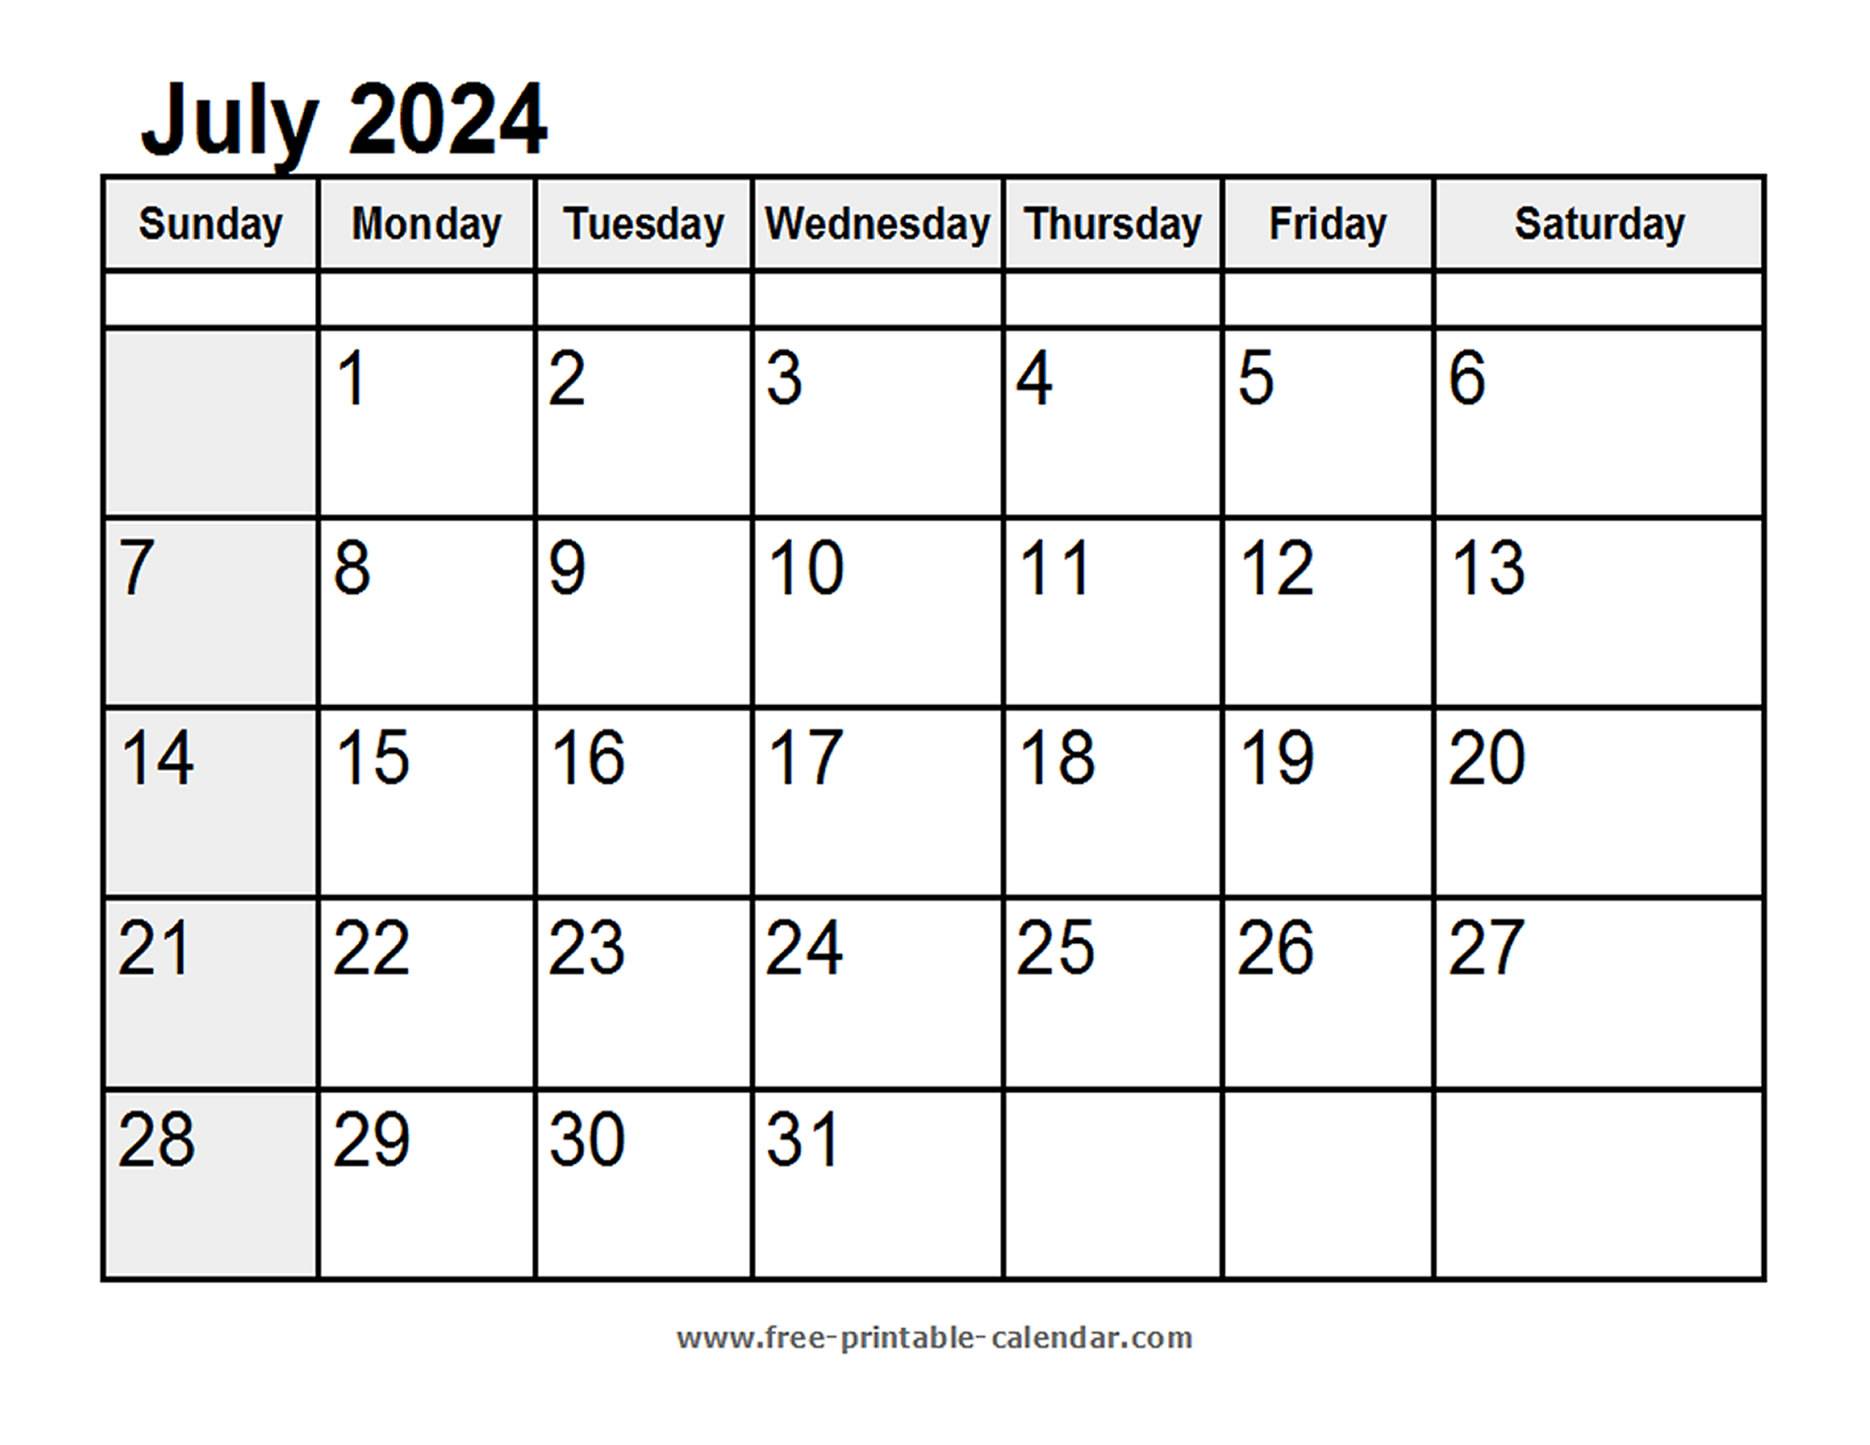 Calendar July 2024 - Free-printable-calendar.com